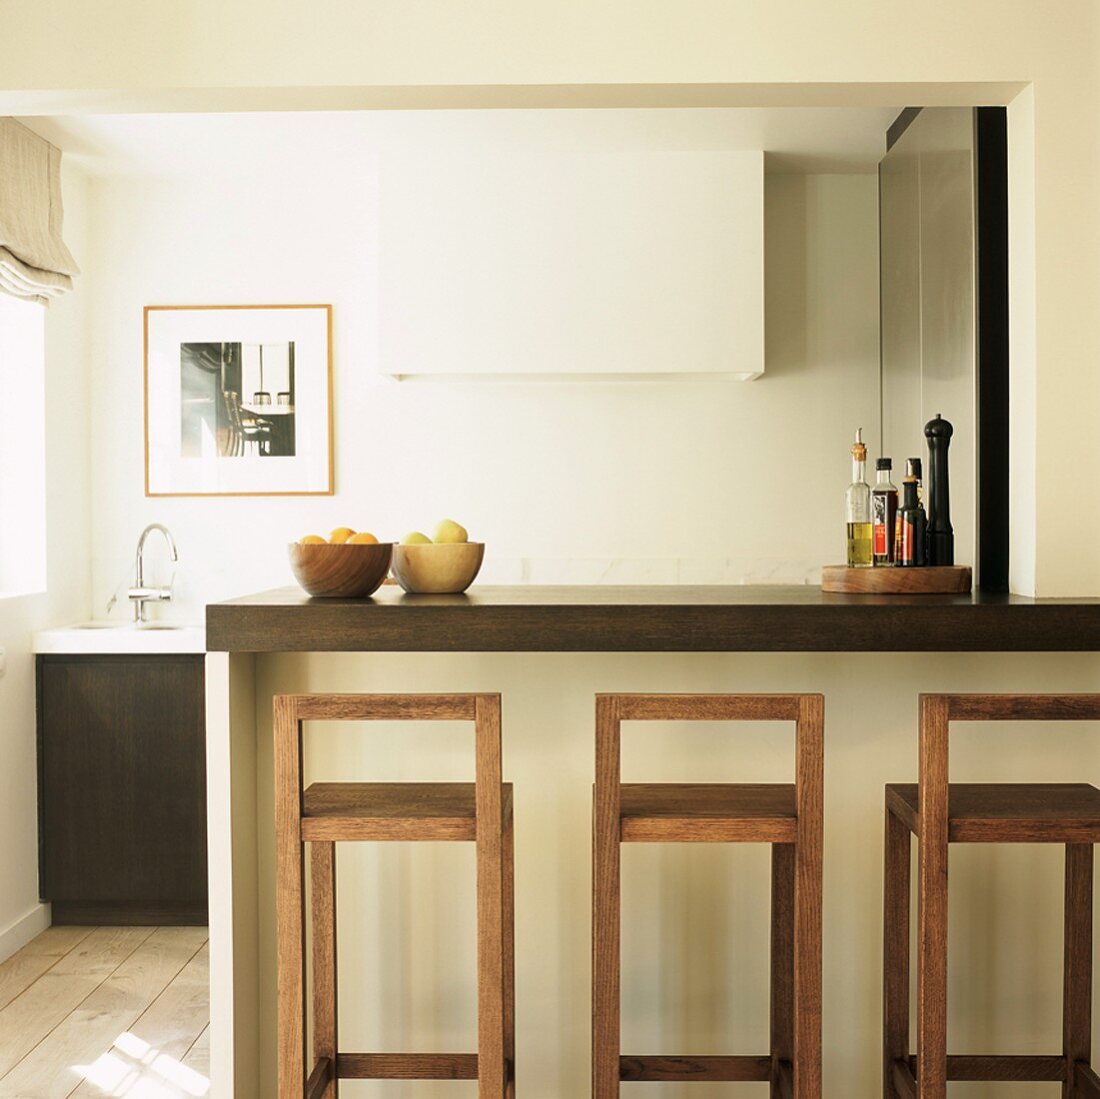 Eine Frühstückstheke mit minimalistischen Barhockern grenzt die moderne Küche vom Wohnbereich ab